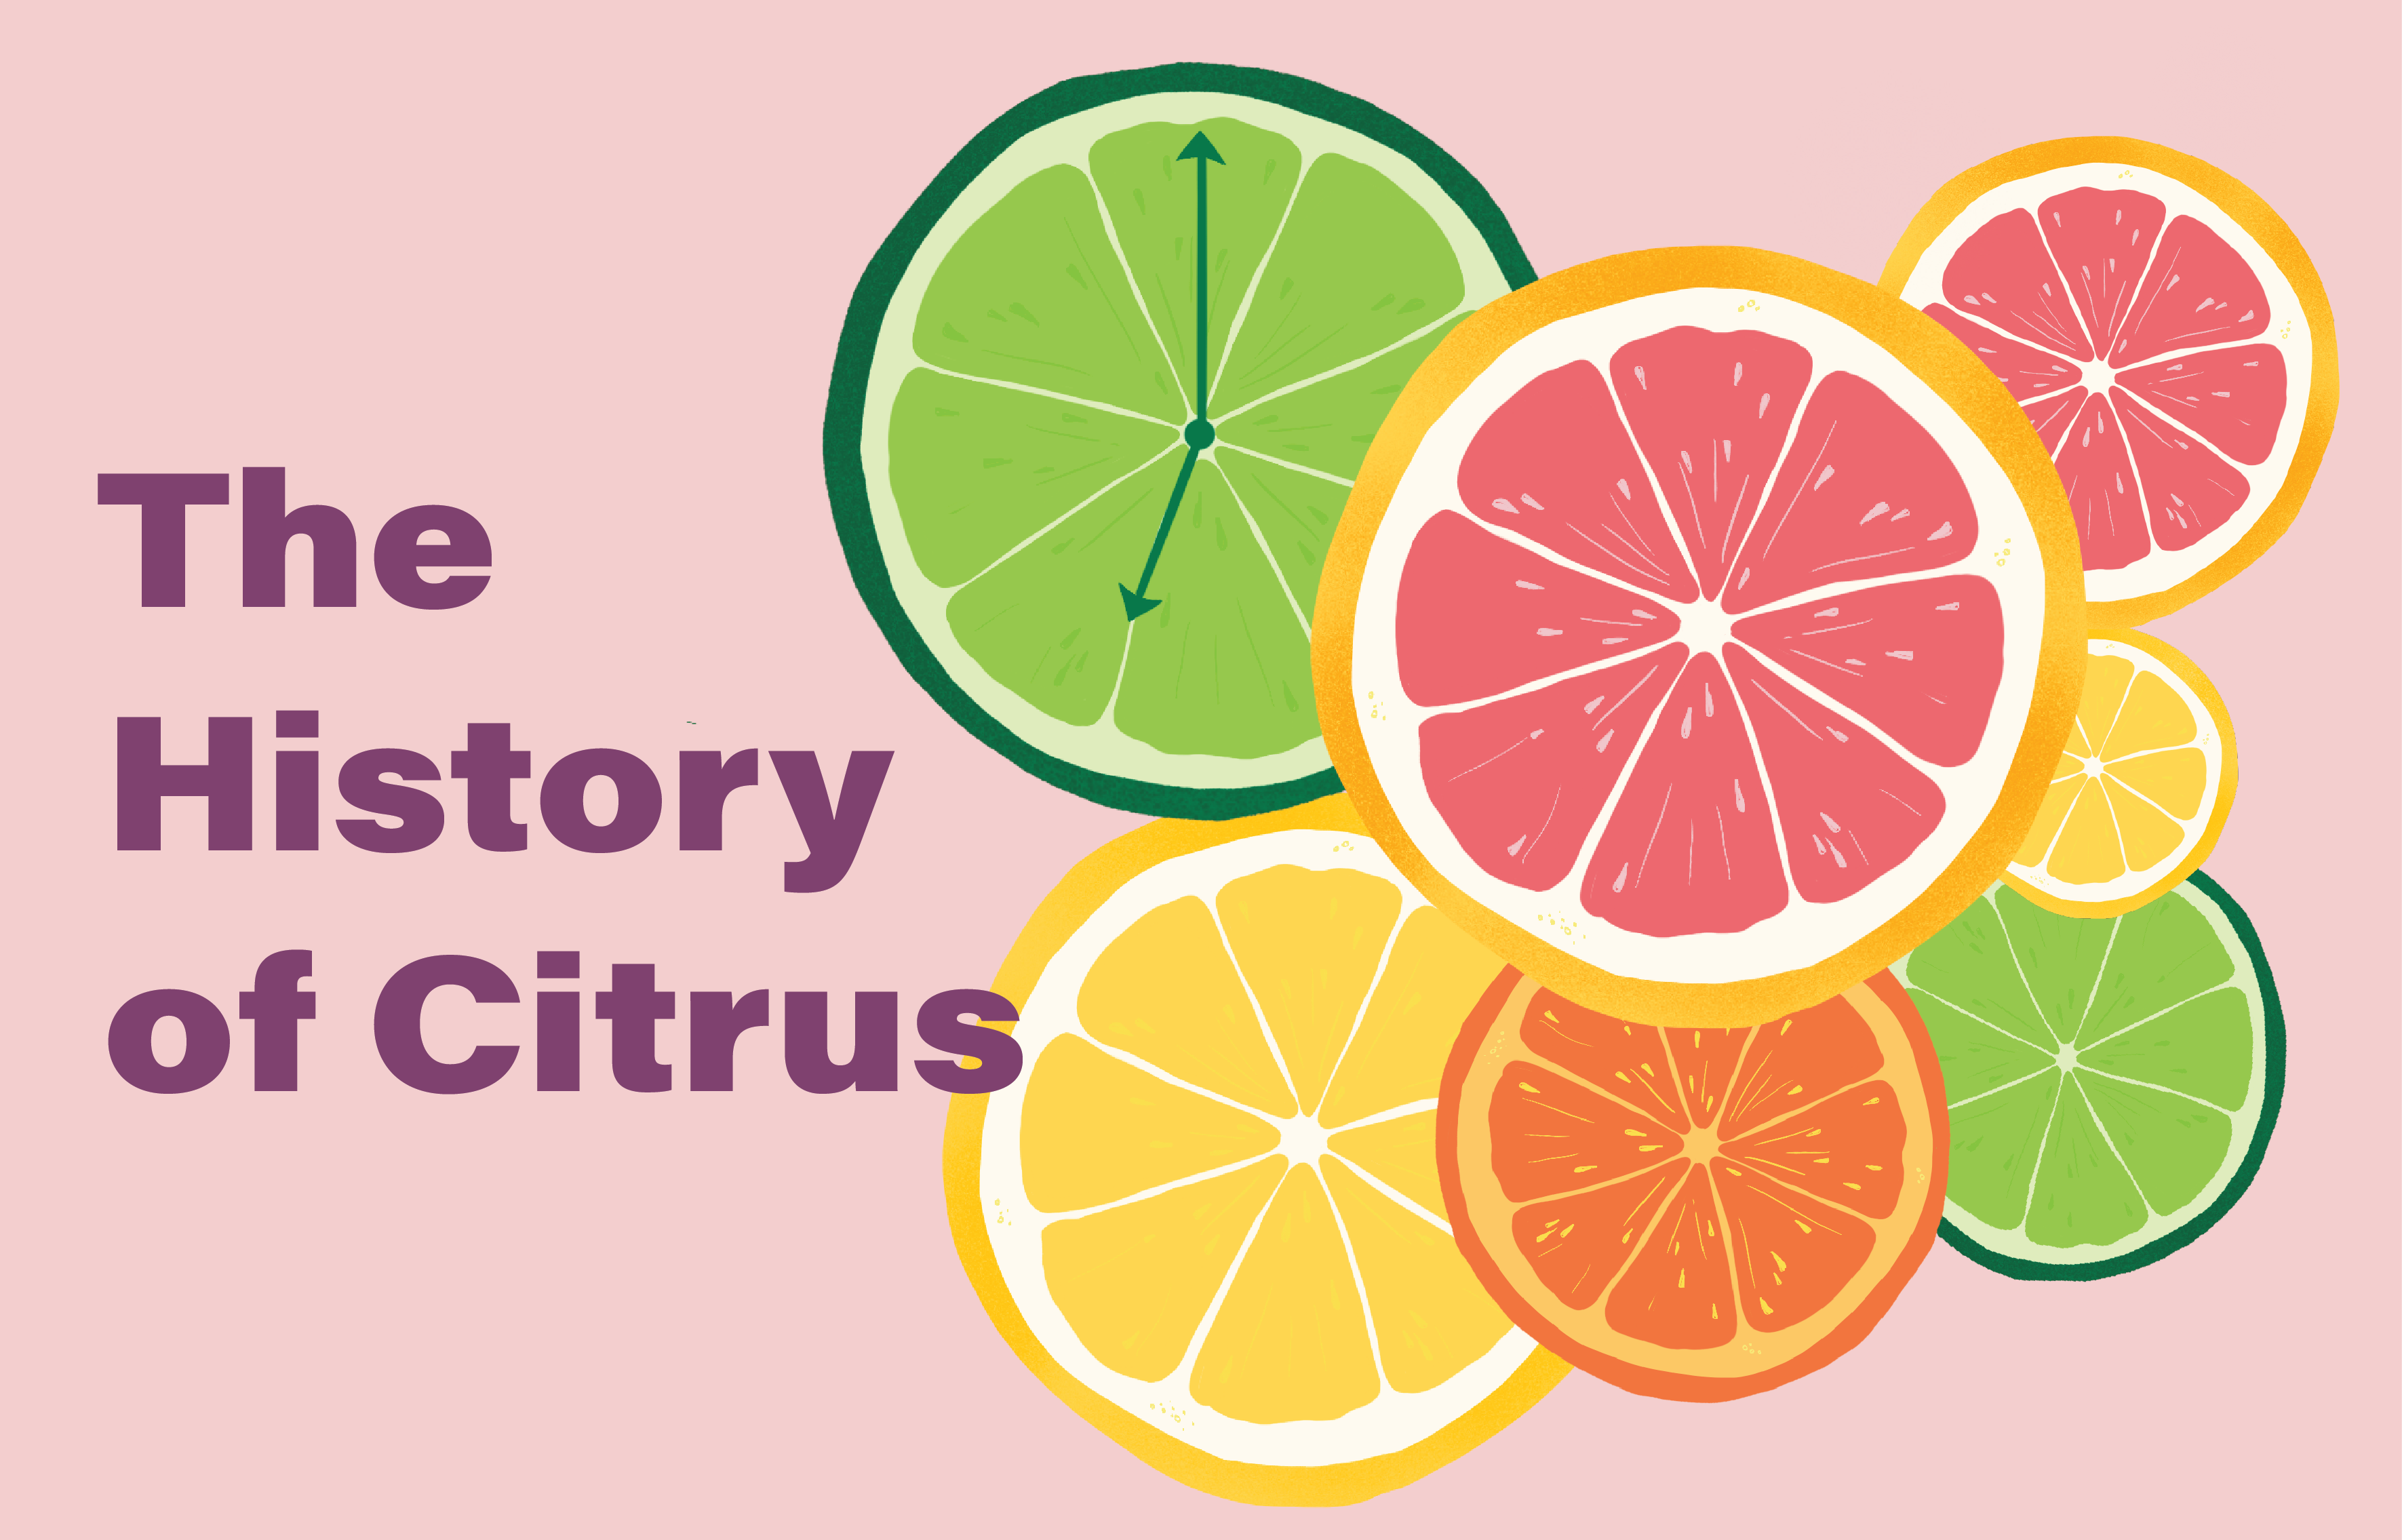 Citrus fruit origins